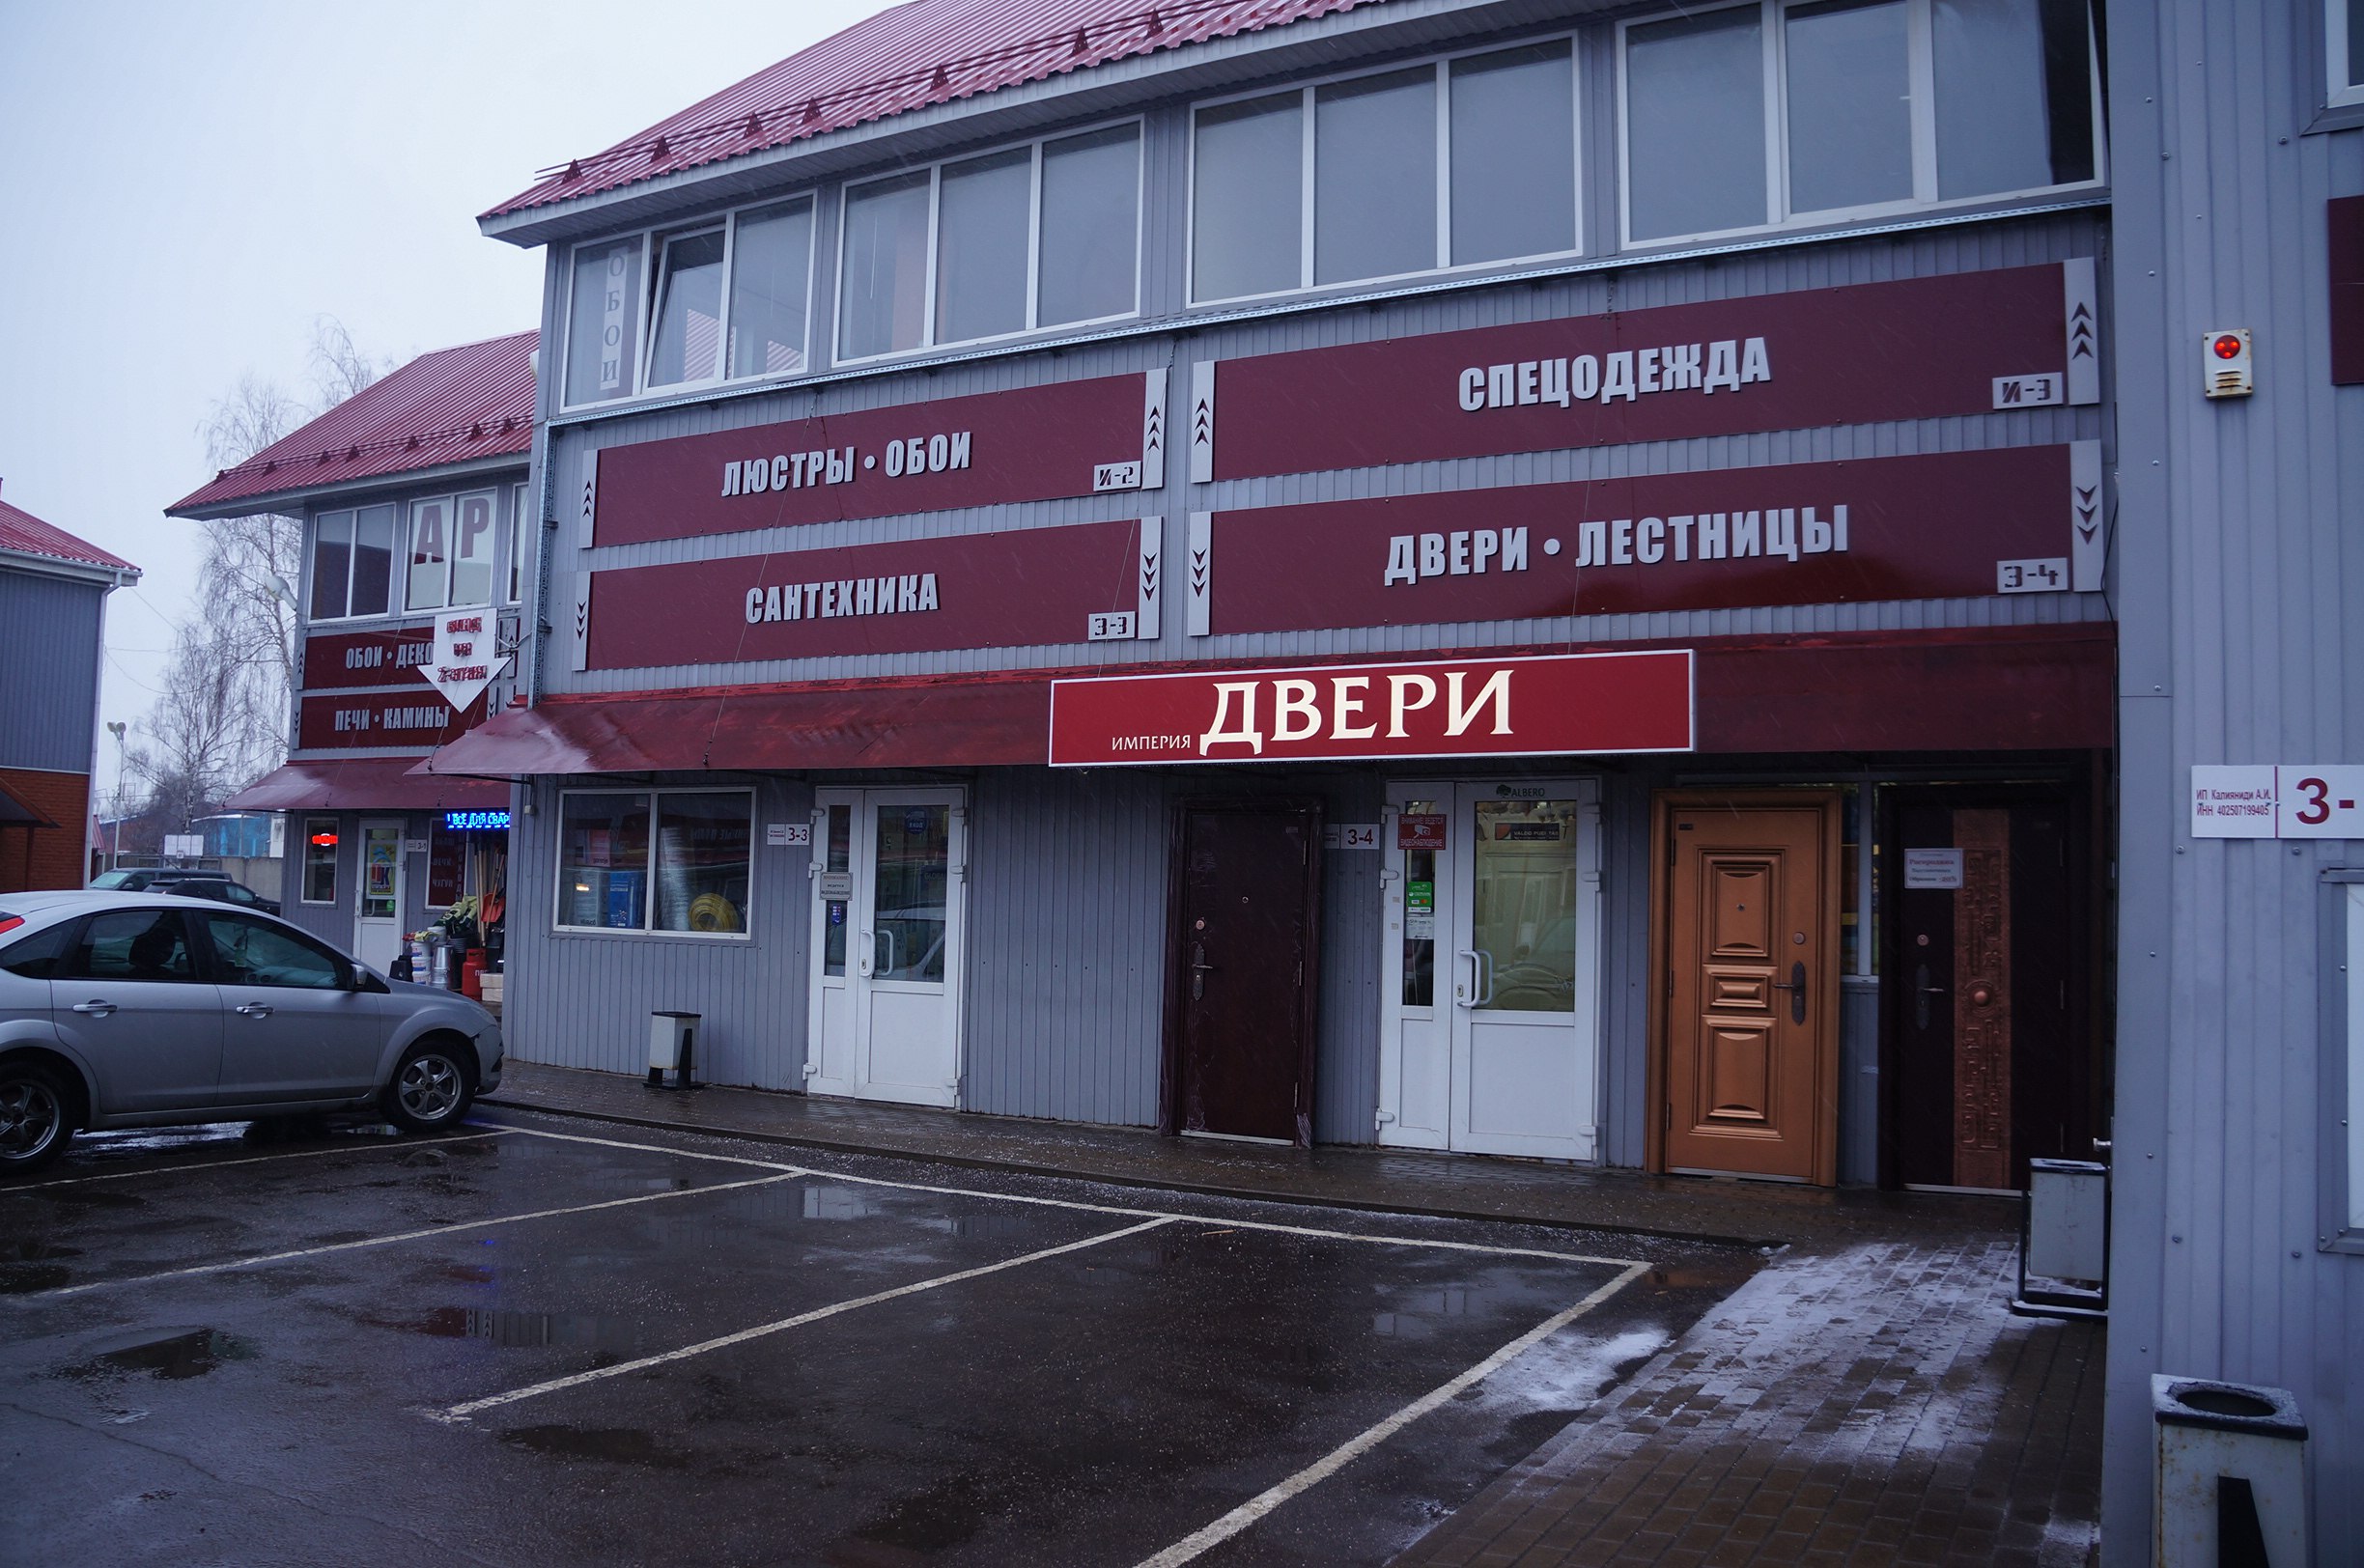 Магазин Би Би Наро Фоминск